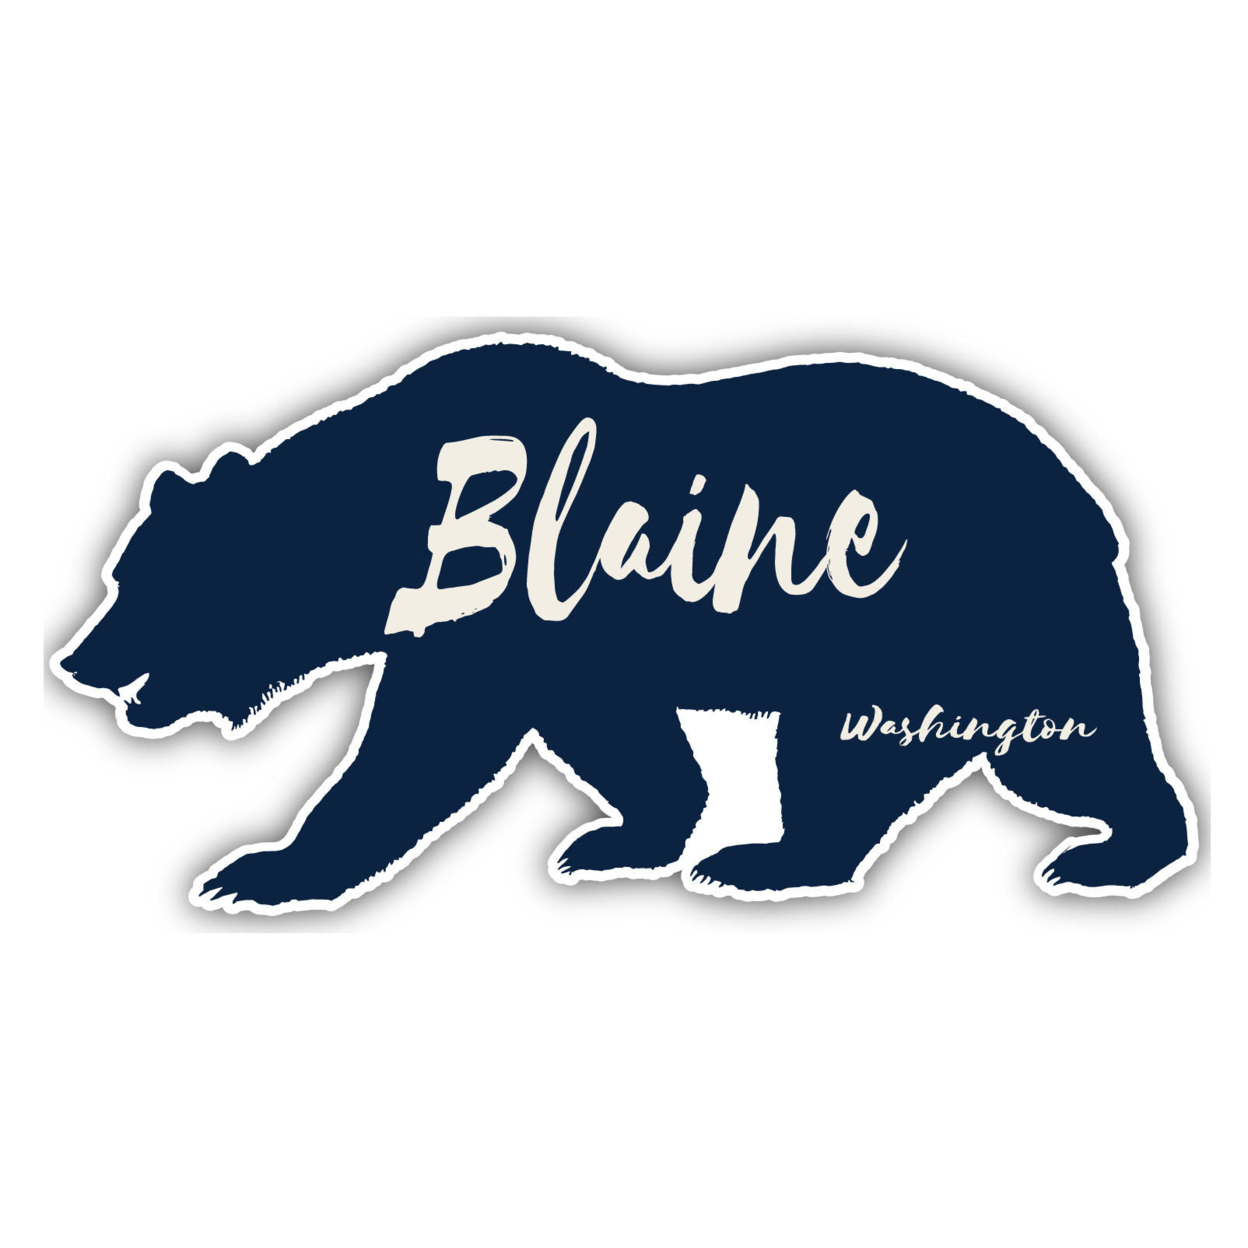 Blaine Washington Souvenir Decorative Stickers (Choose Theme And Size) - 4-Pack, 10-Inch, Tent